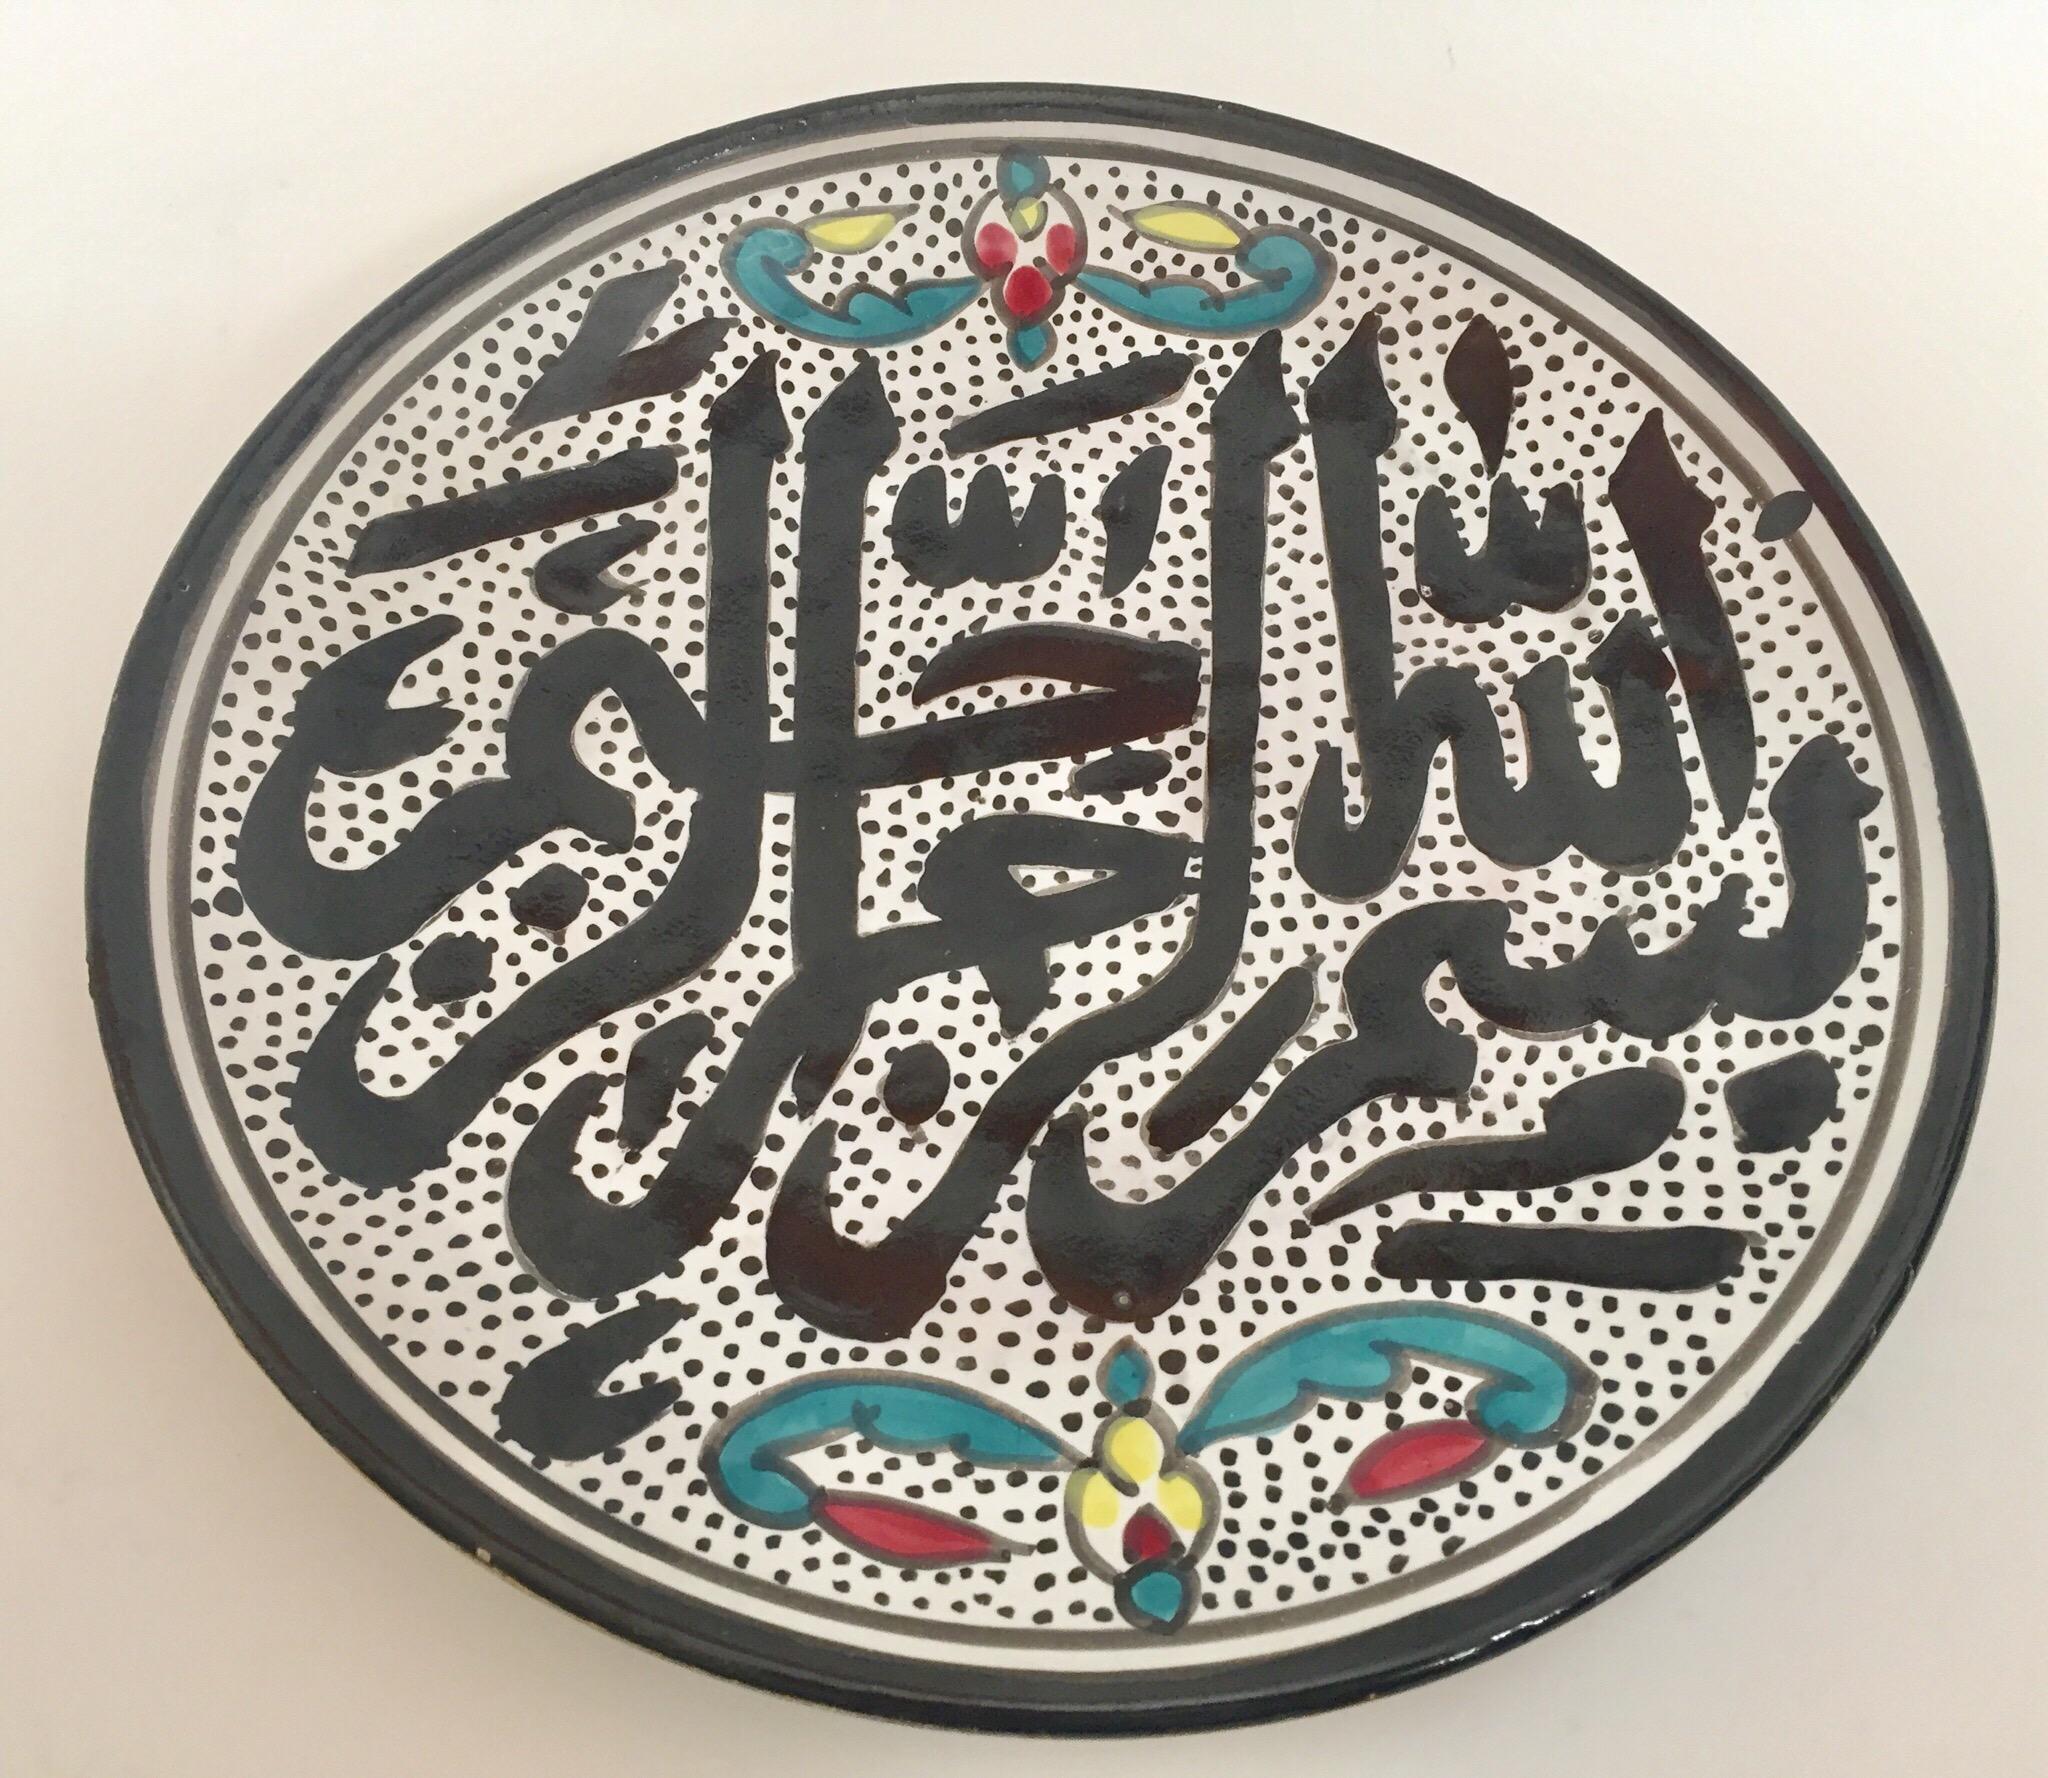 Polychromer, handbemalter und handgefertigter Wandteller aus maurischer Keramik mit polychromem osmanischem Blumenmuster und islamischer Koran-Kalligraphie in der Mitte.
